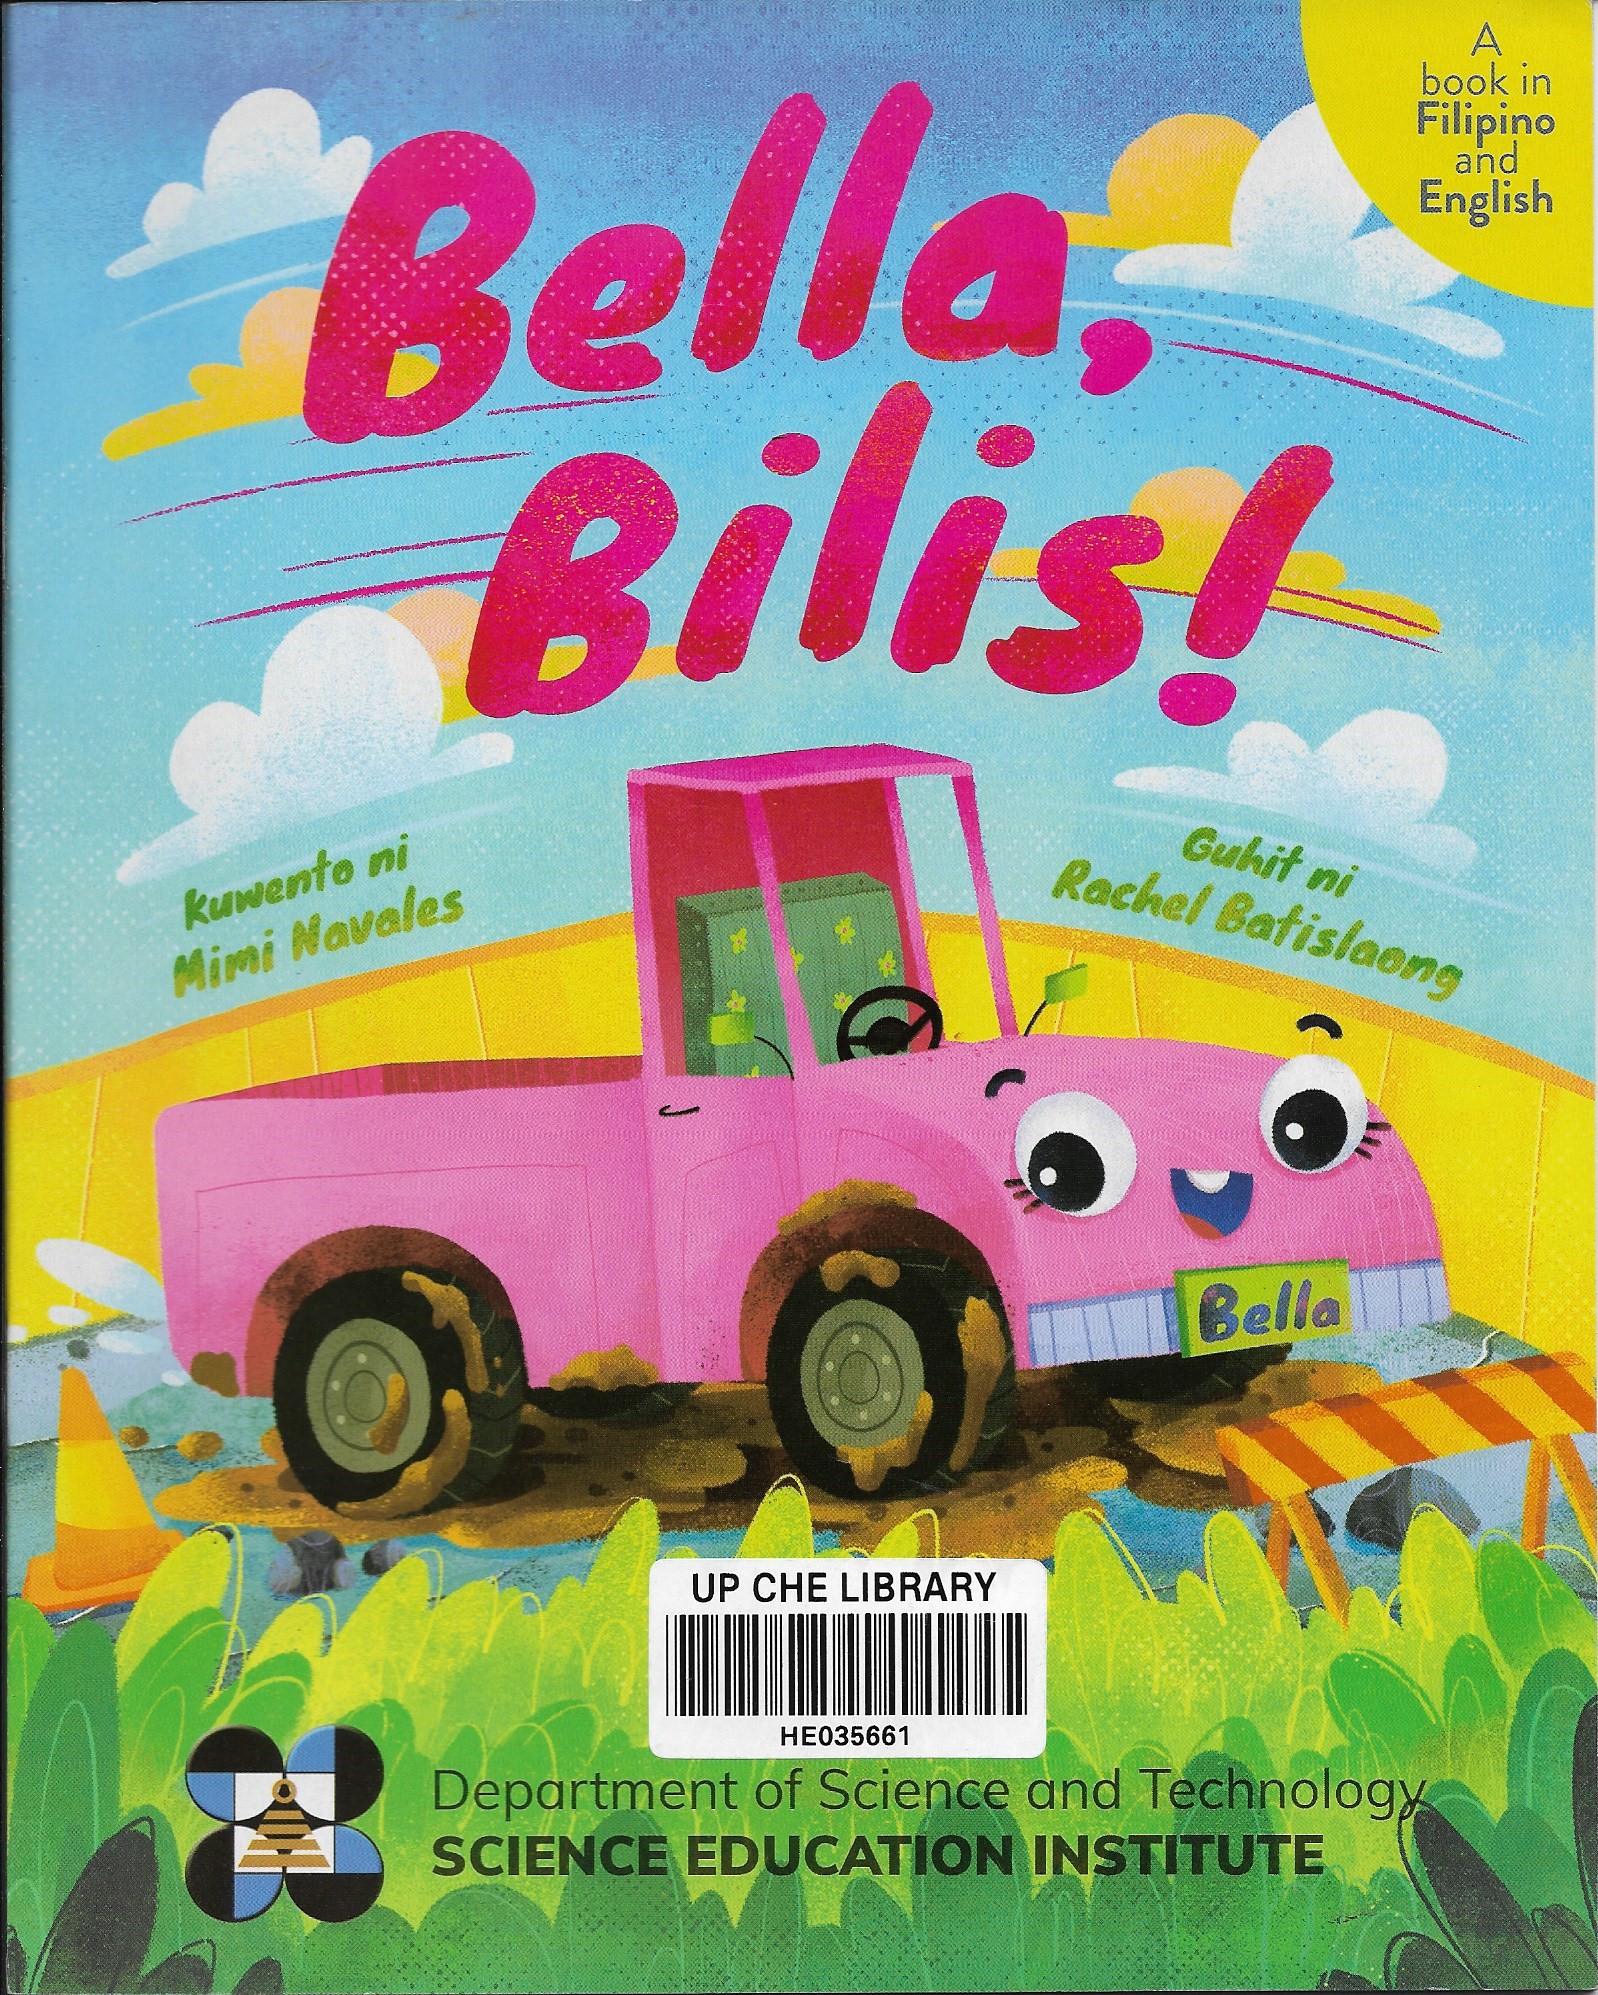 Bella Bilis!